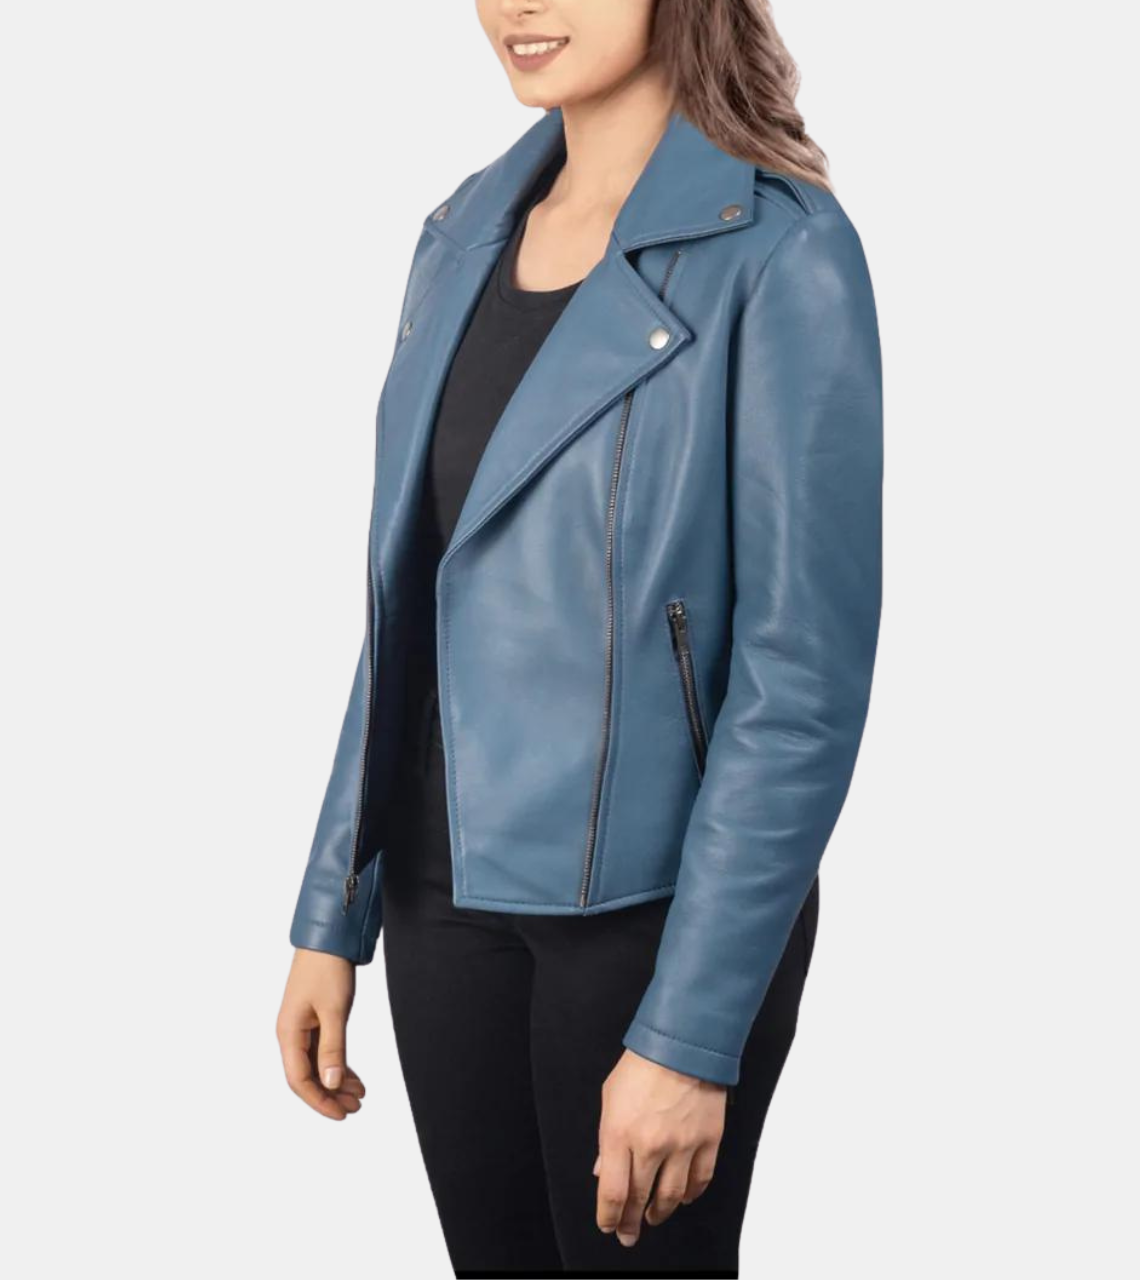 Shaelyn Blue Biker's Leather Jacket For Women's